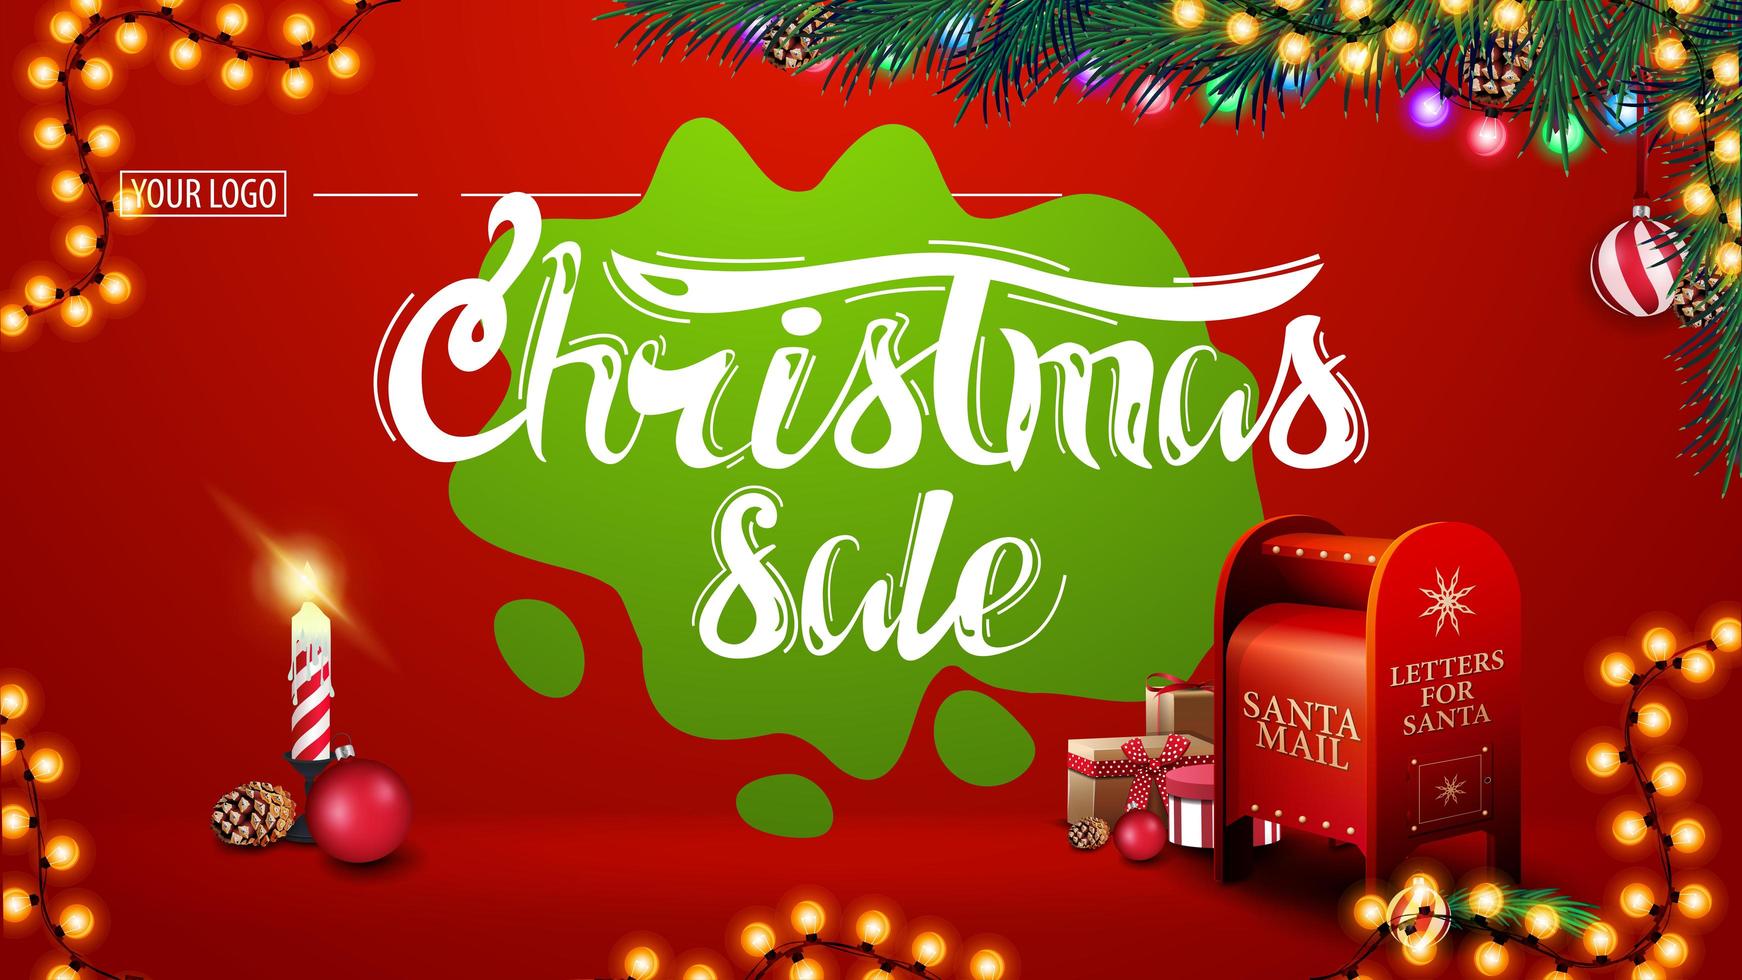 Weihnachtsverkauf, modernes rotes Rabattbanner mit schöner Beschriftung, Girlanden, grünem Fleck, Weihnachtsbaumzweigen, Kerze und Weihnachtsbriefkasten mit Geschenken vektor